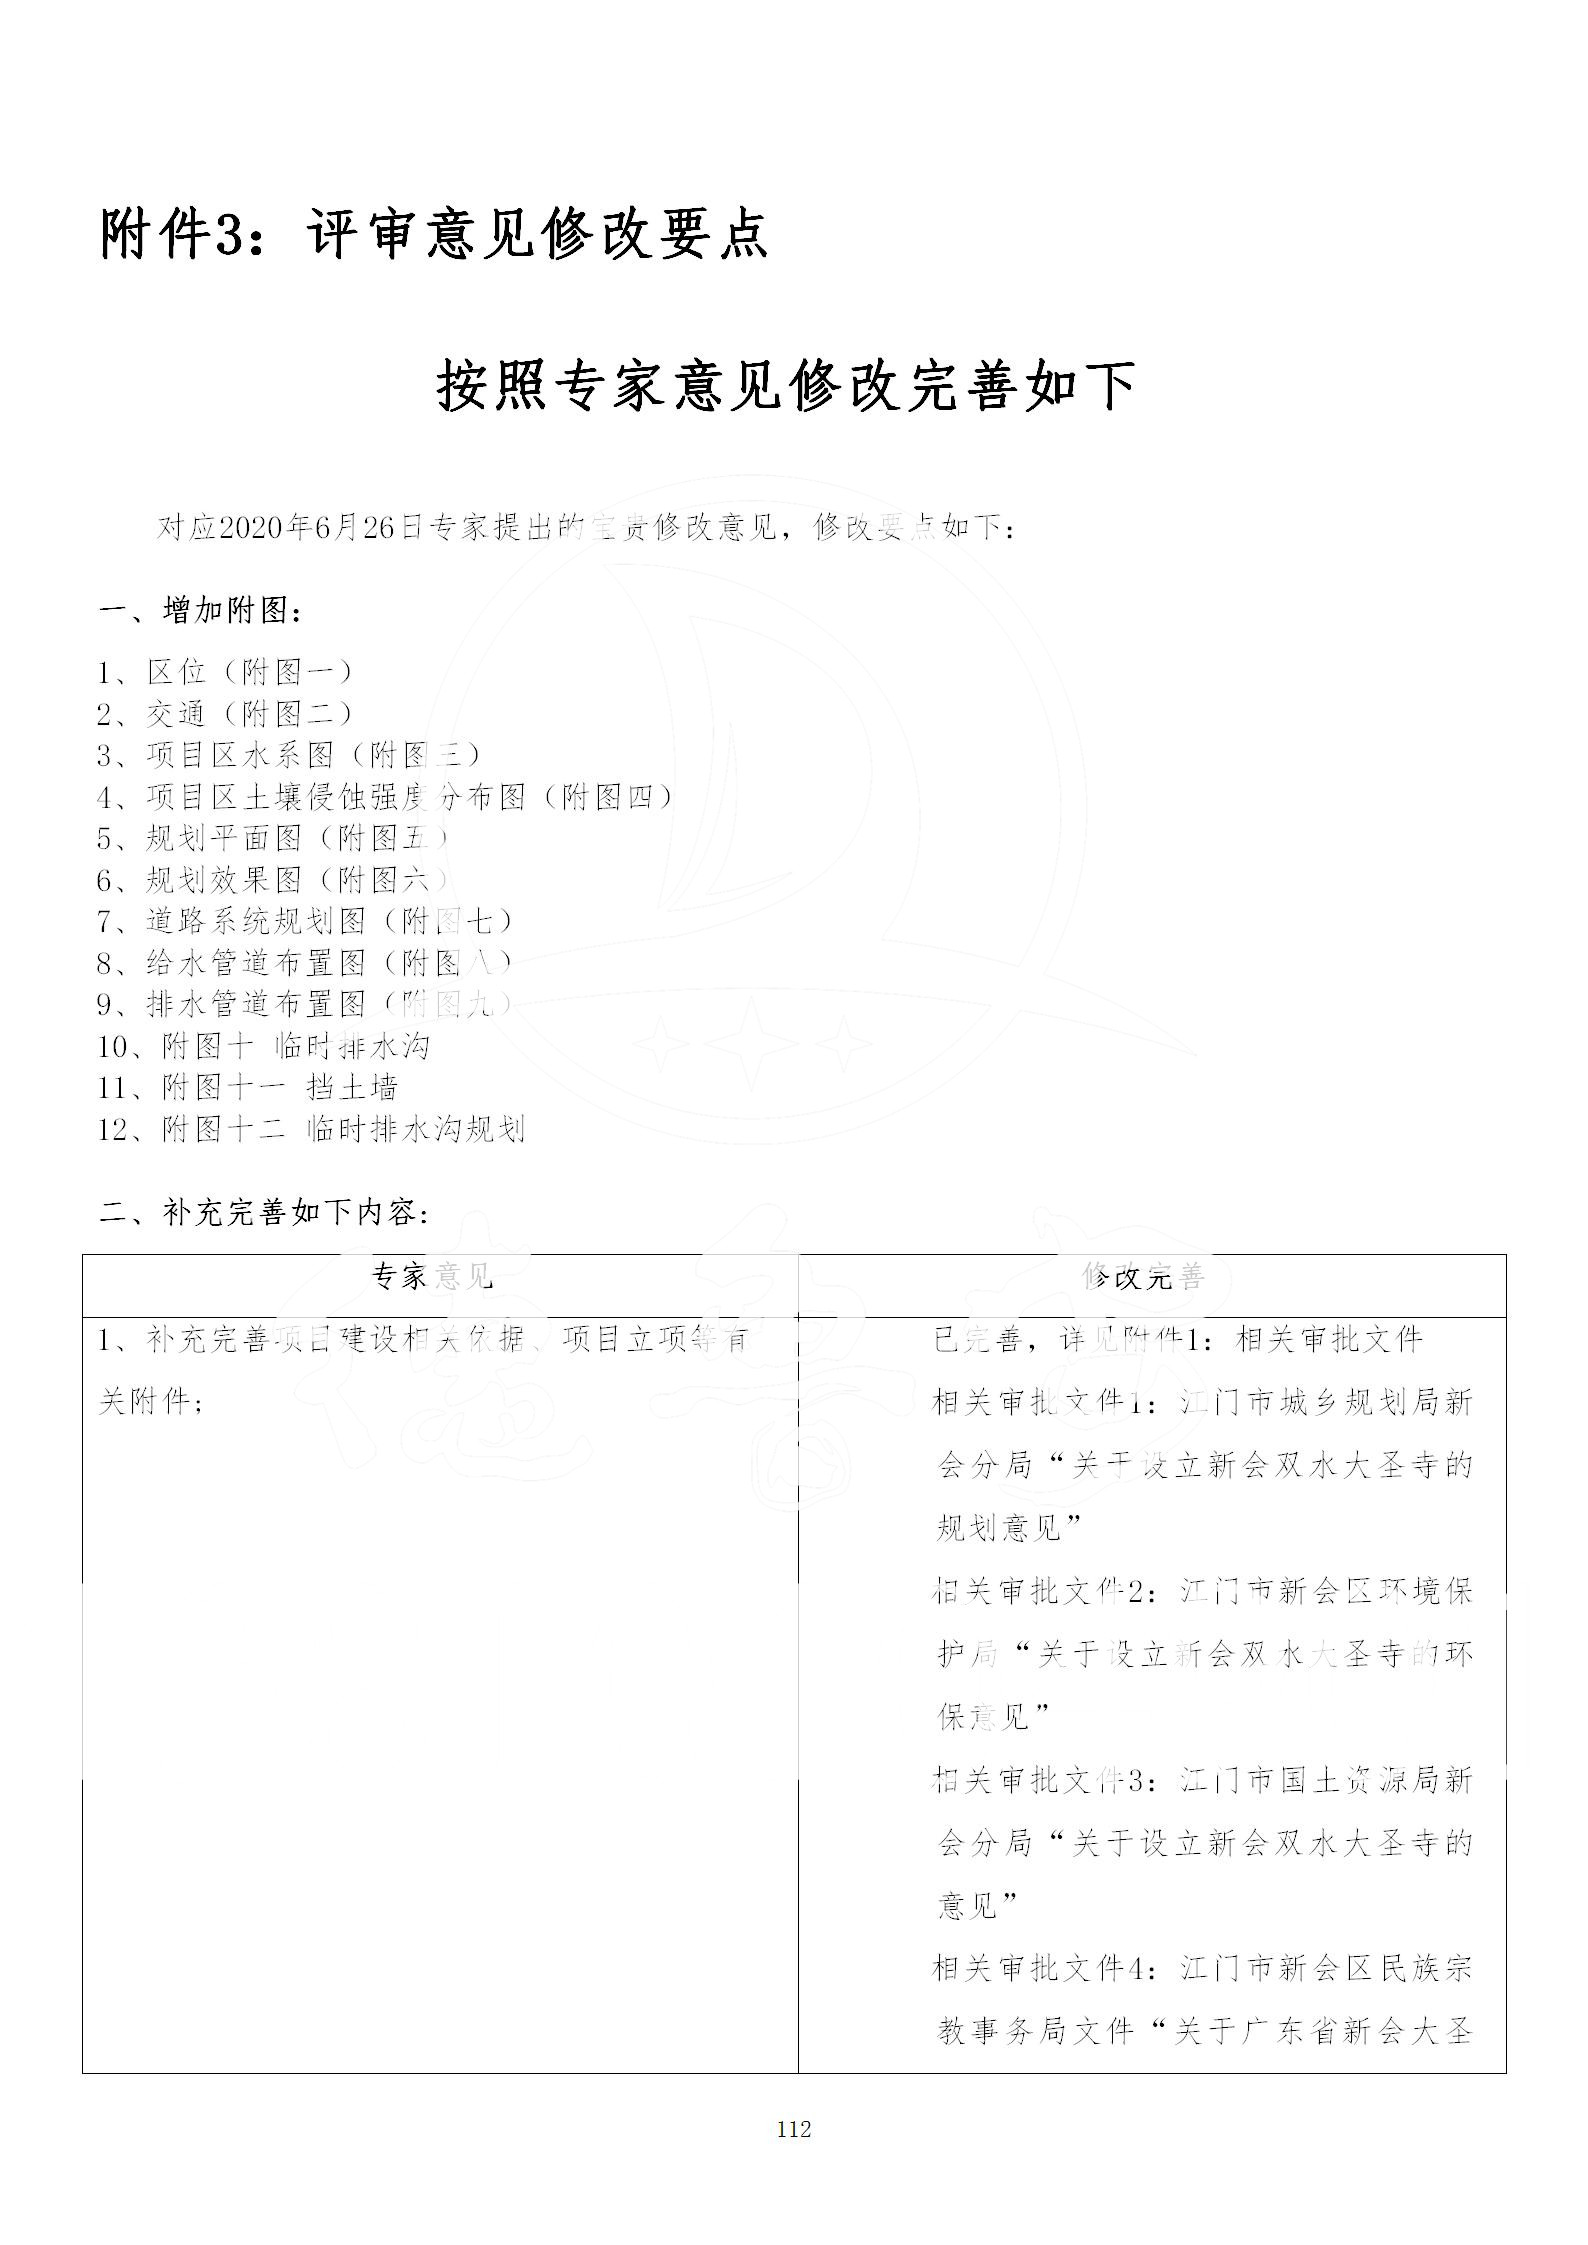 广东省大圣寺水土保持报告  修改稿5_112.jpg